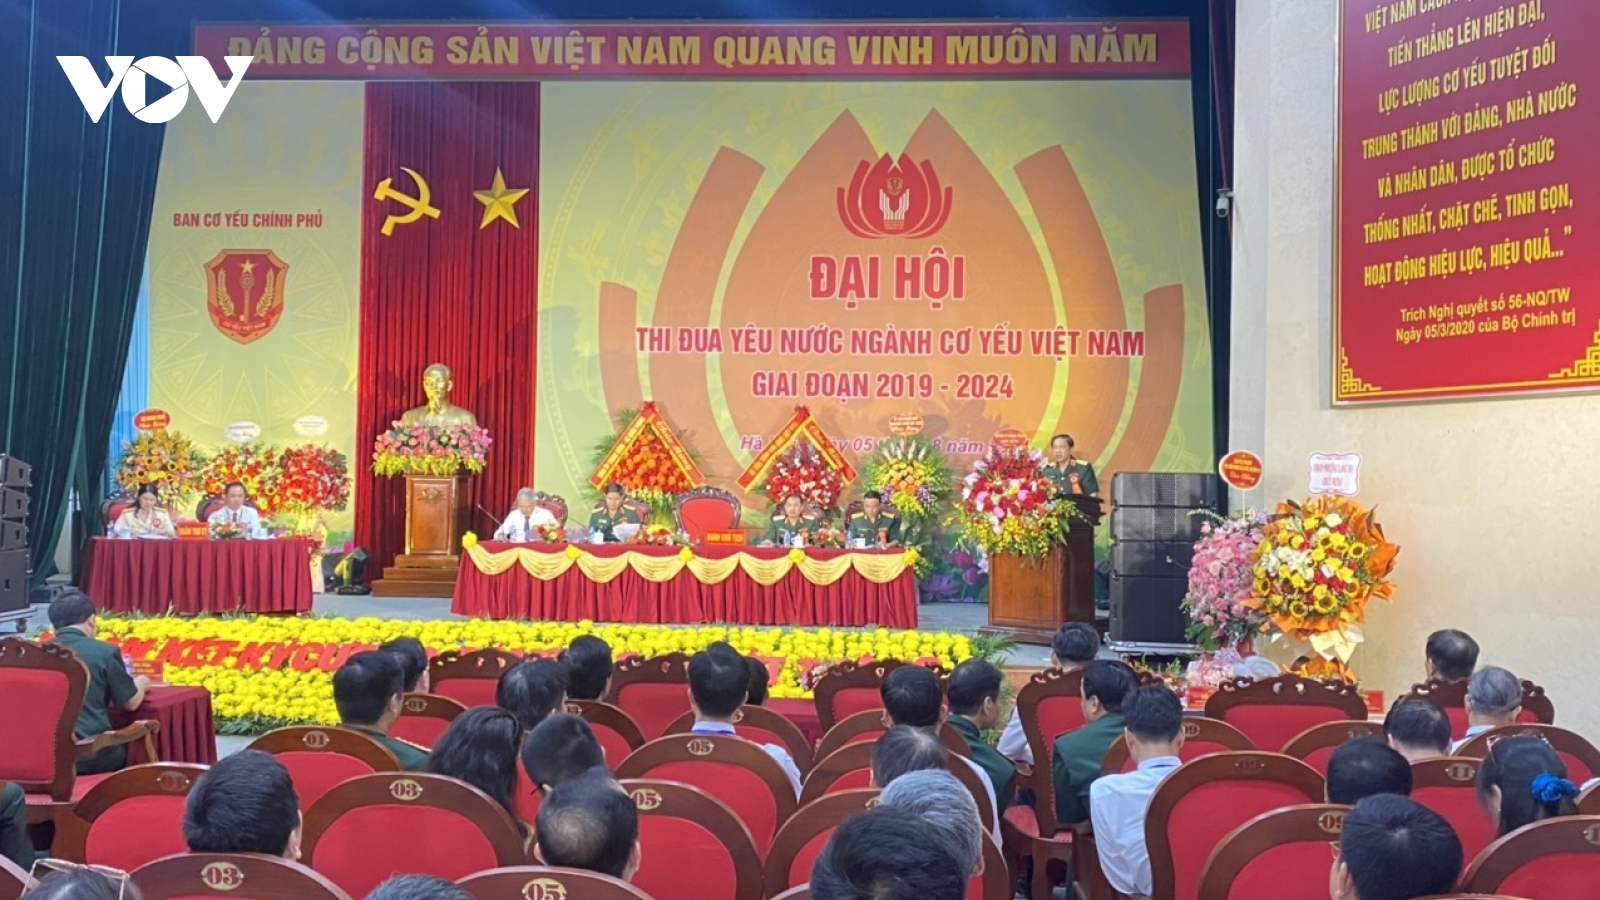 Đại hội thi đua yêu nước ngành Cơ yếu Việt Nam